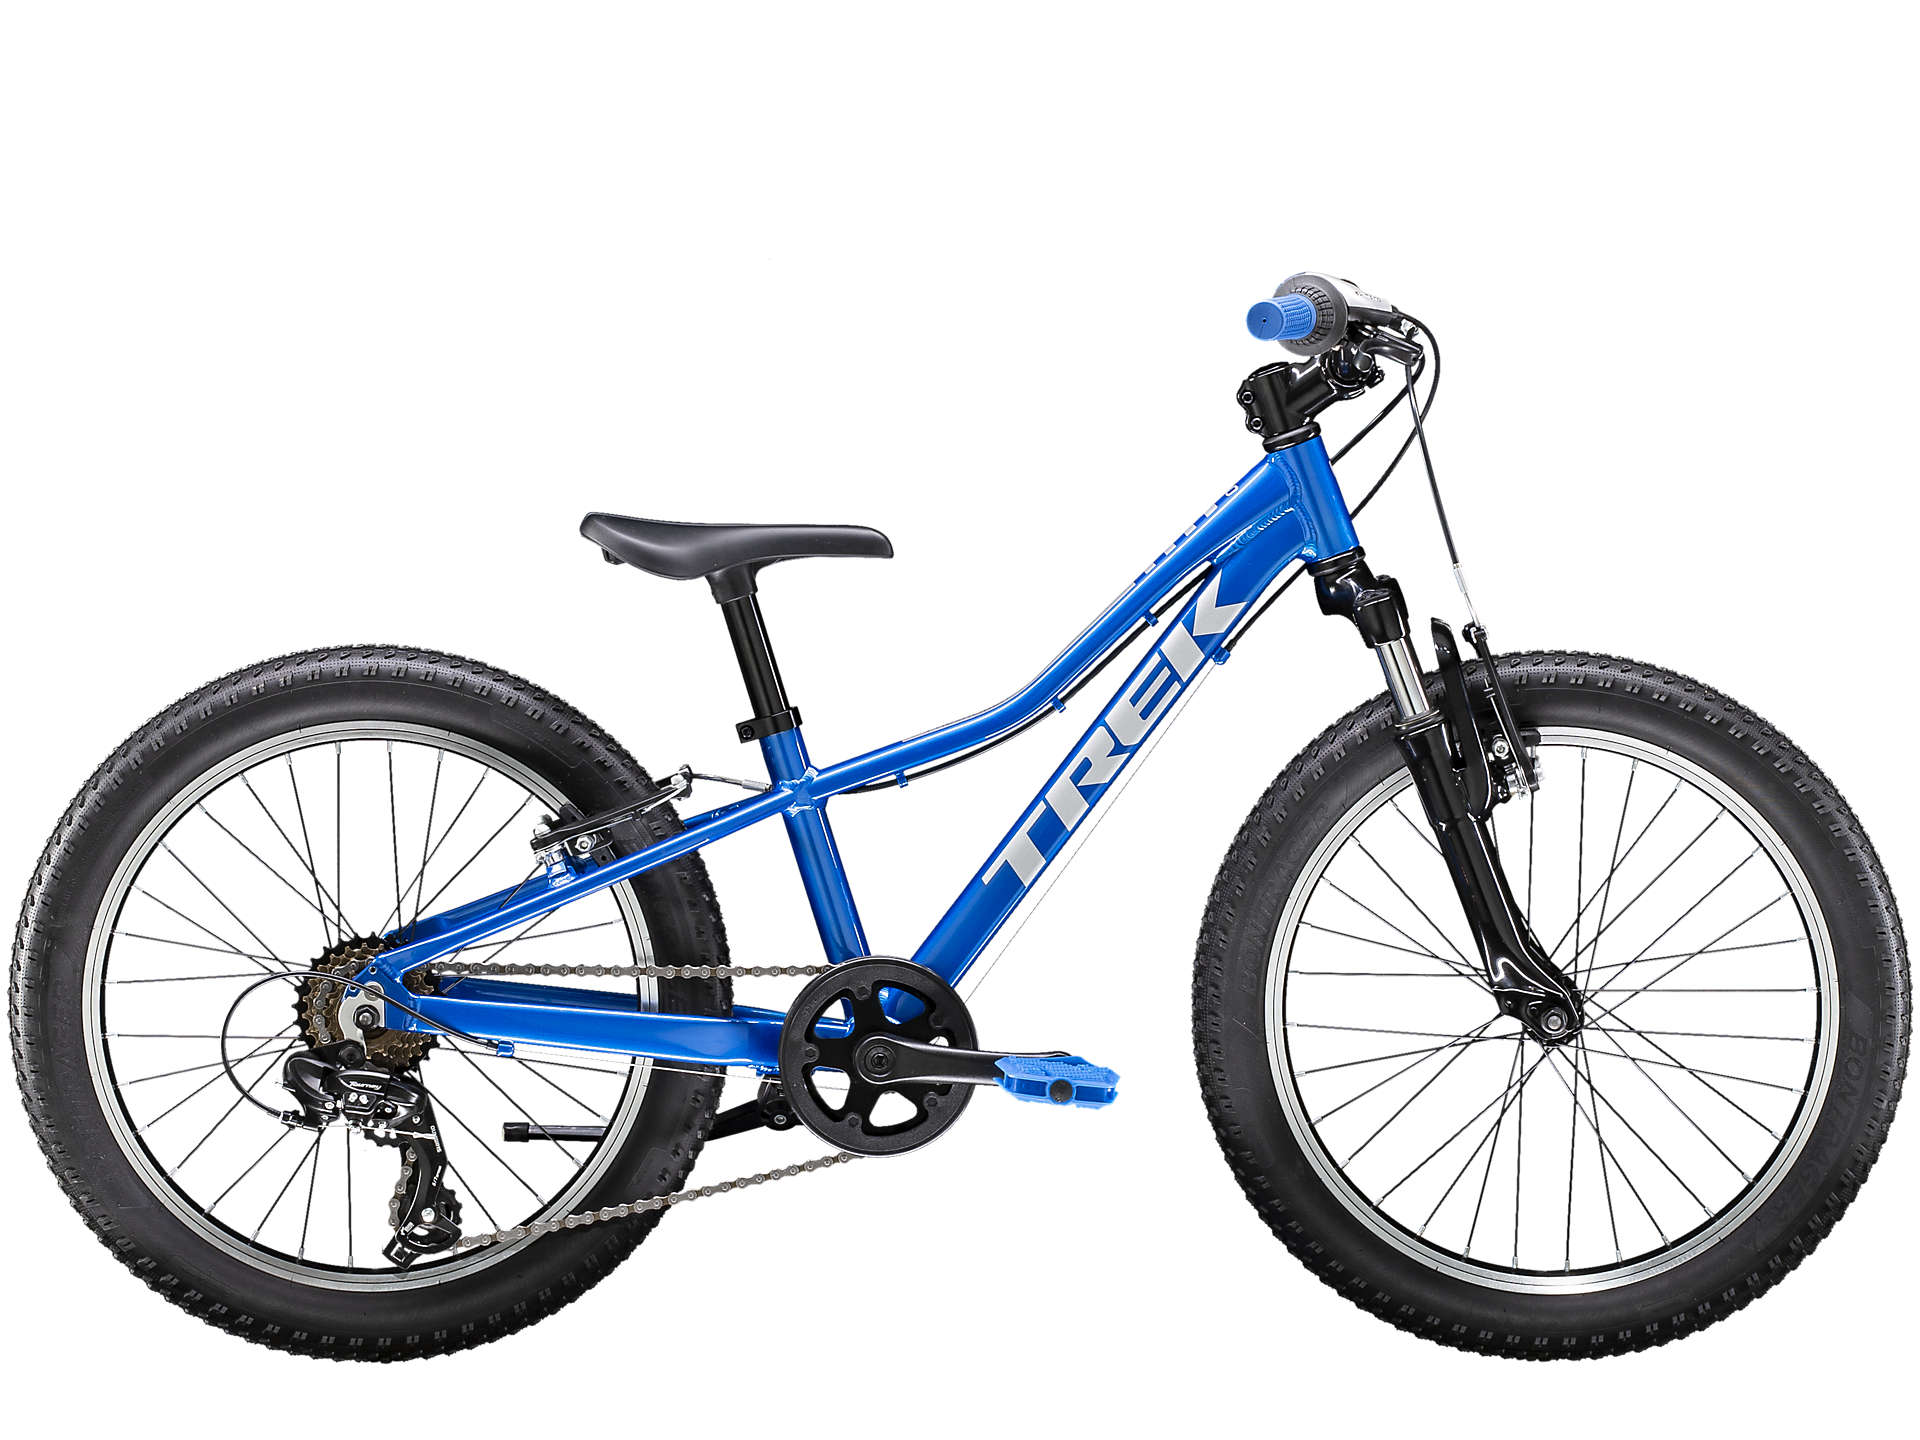 子供用自転車 16インチ Precaliber 16 身長99-117cm 黒 自転車本体 アウトレット販売品